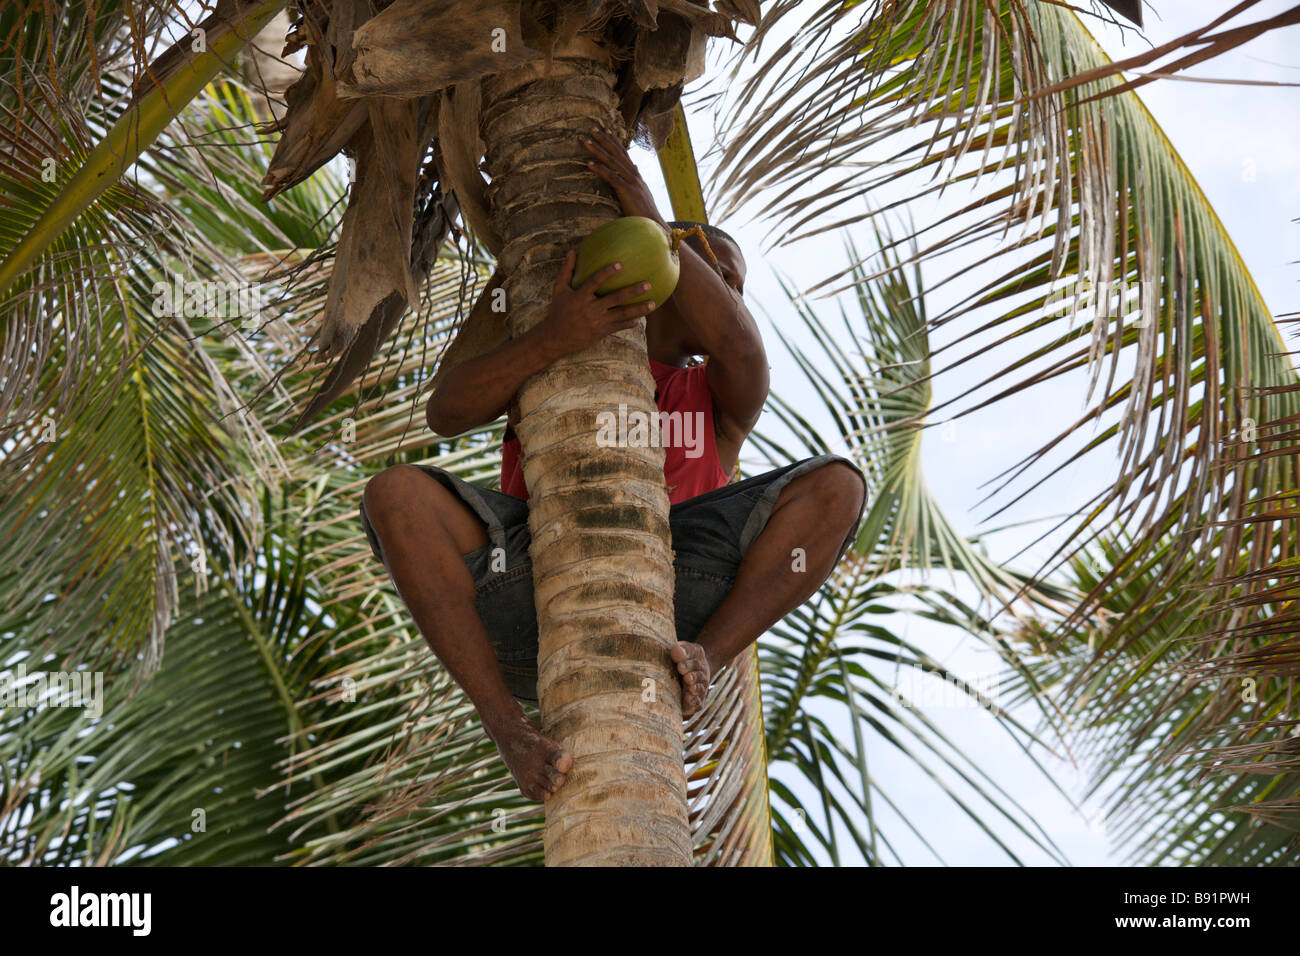 Man climbing a coconut tree harvesting coconut Stock Photo